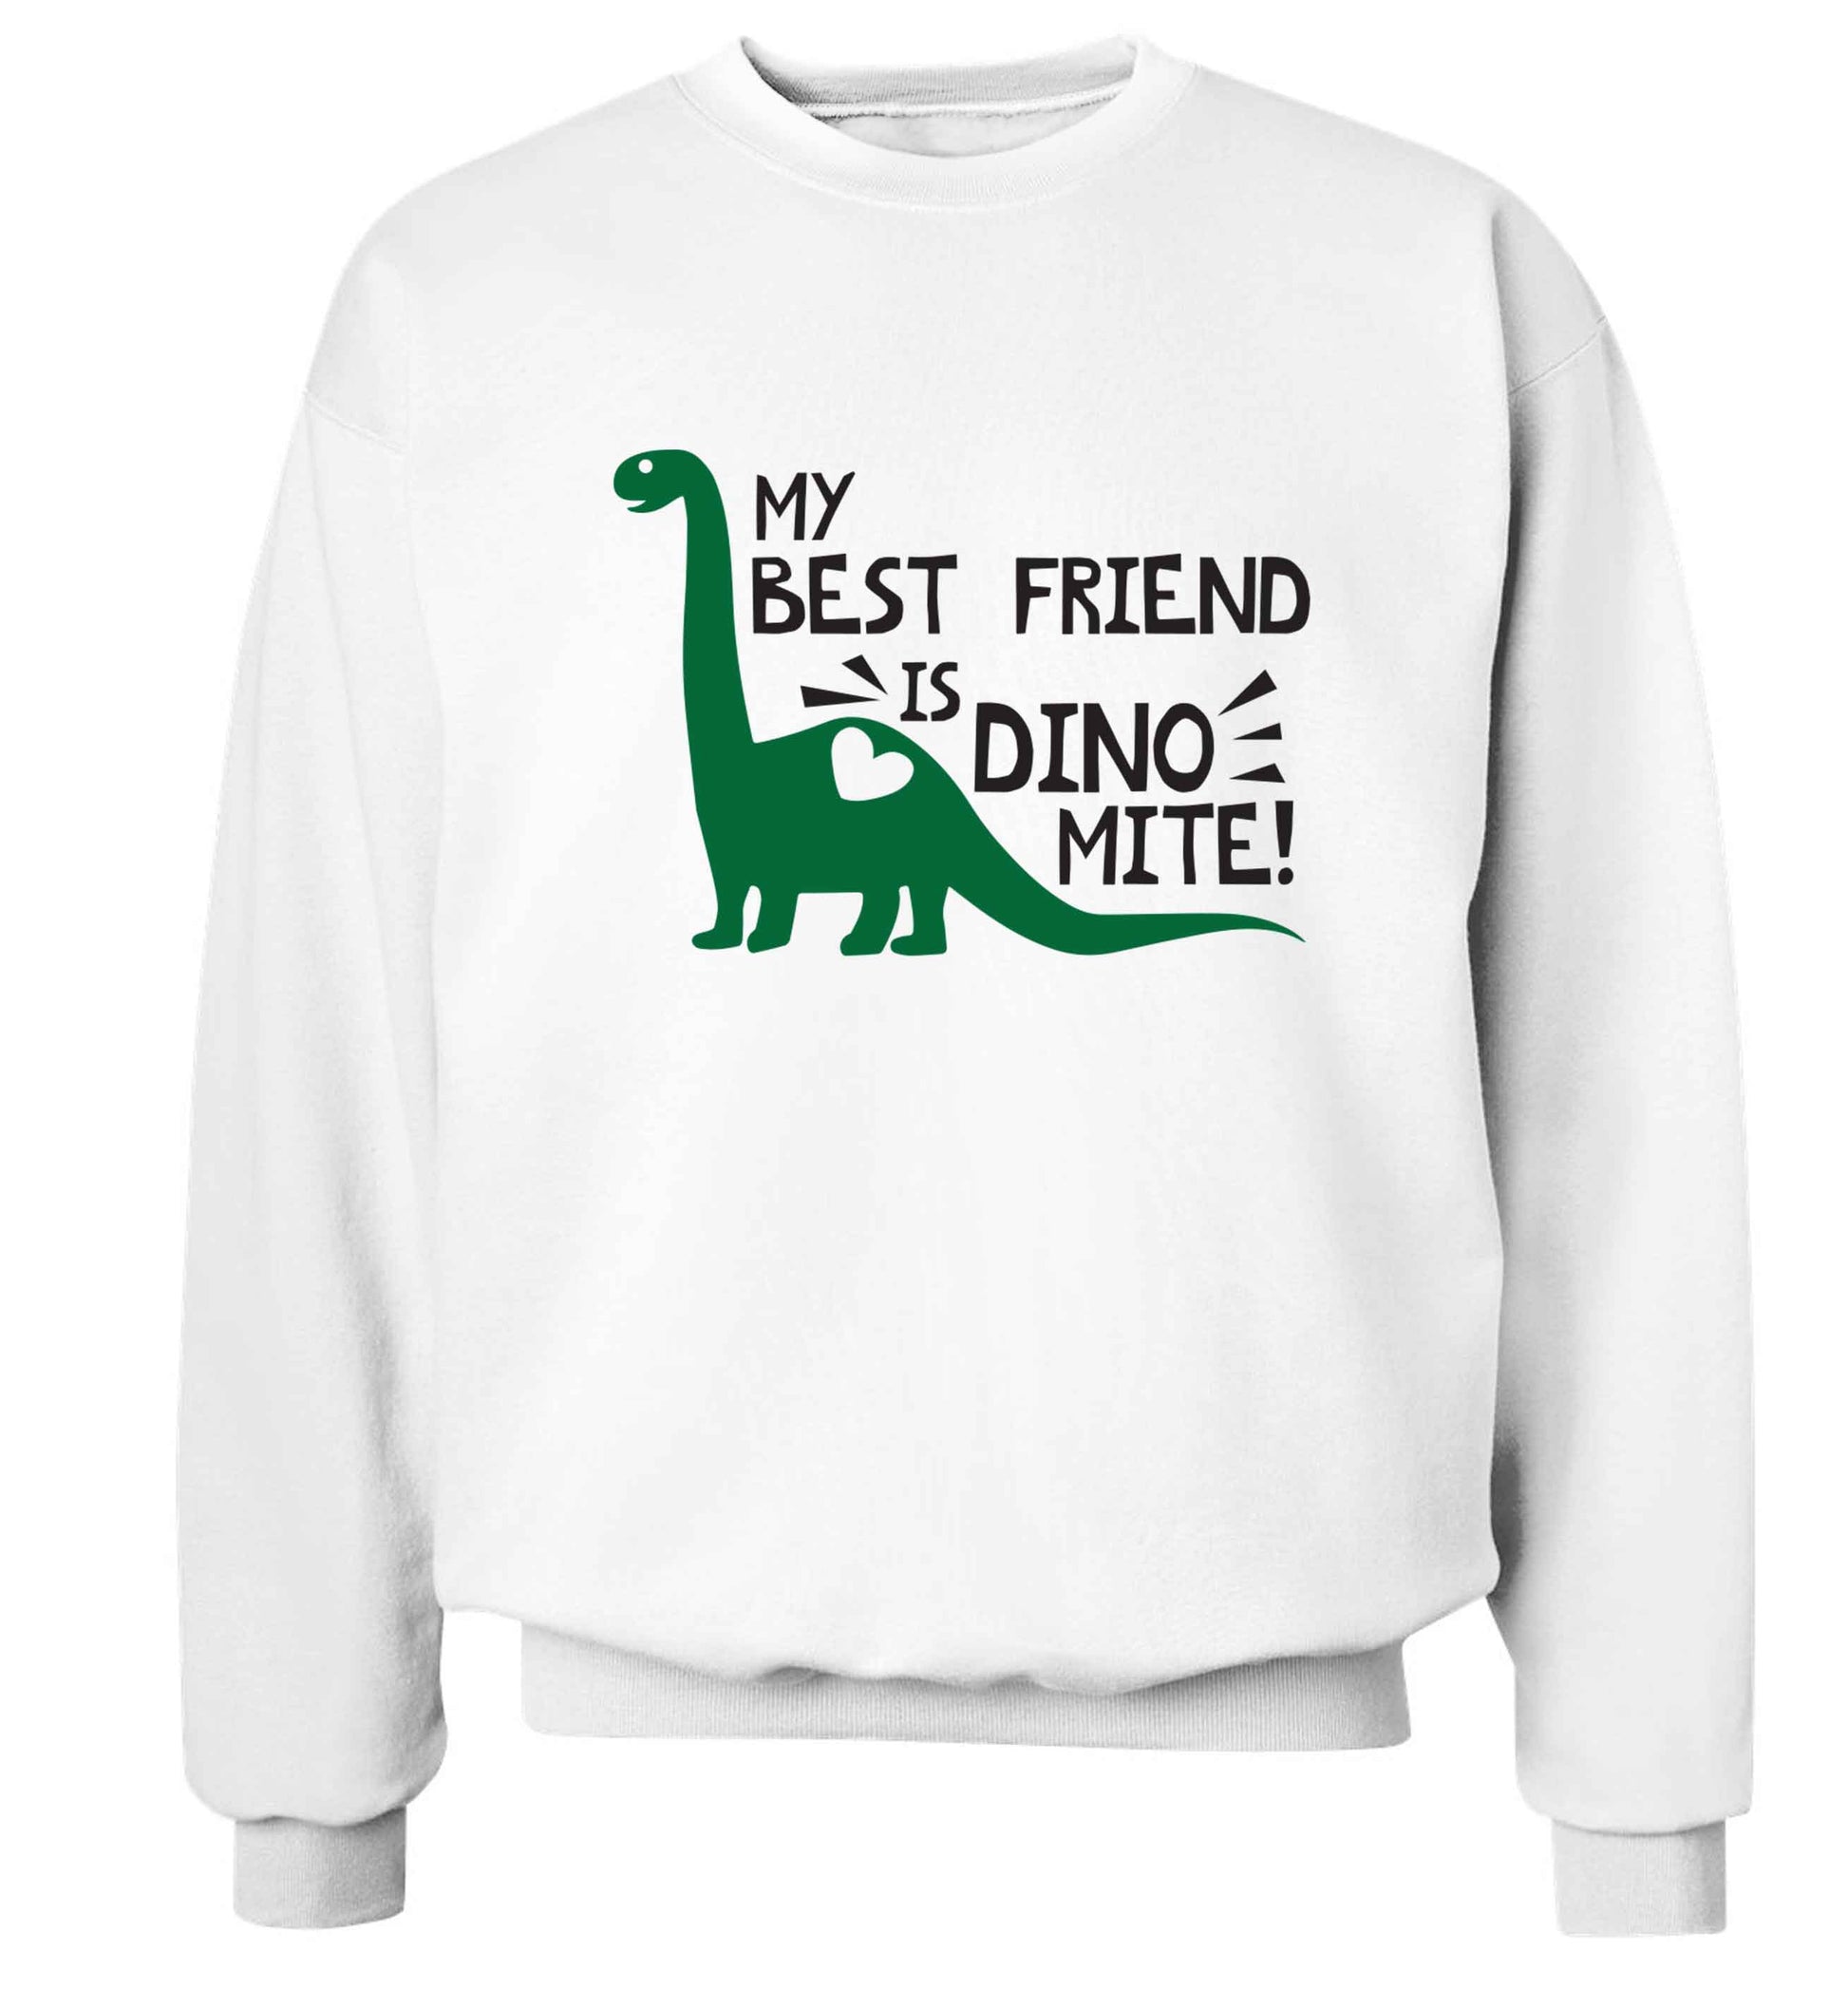 My best friend is dinomite! Adult's unisex white Sweater 2XL